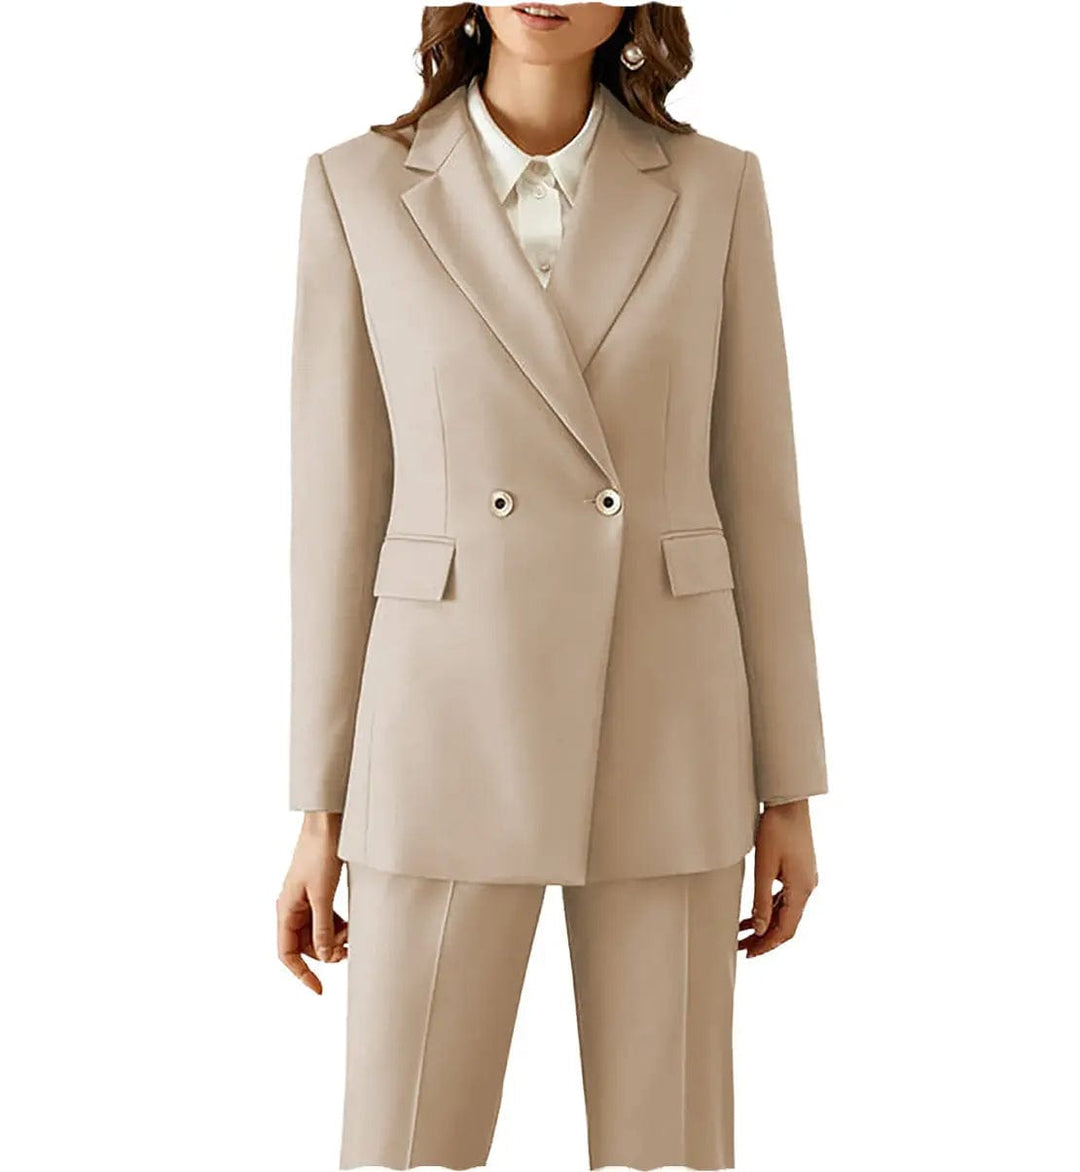 solovedress 2 Pieces Peak Lapel Fashion Women Suit (Blazer+Pants)